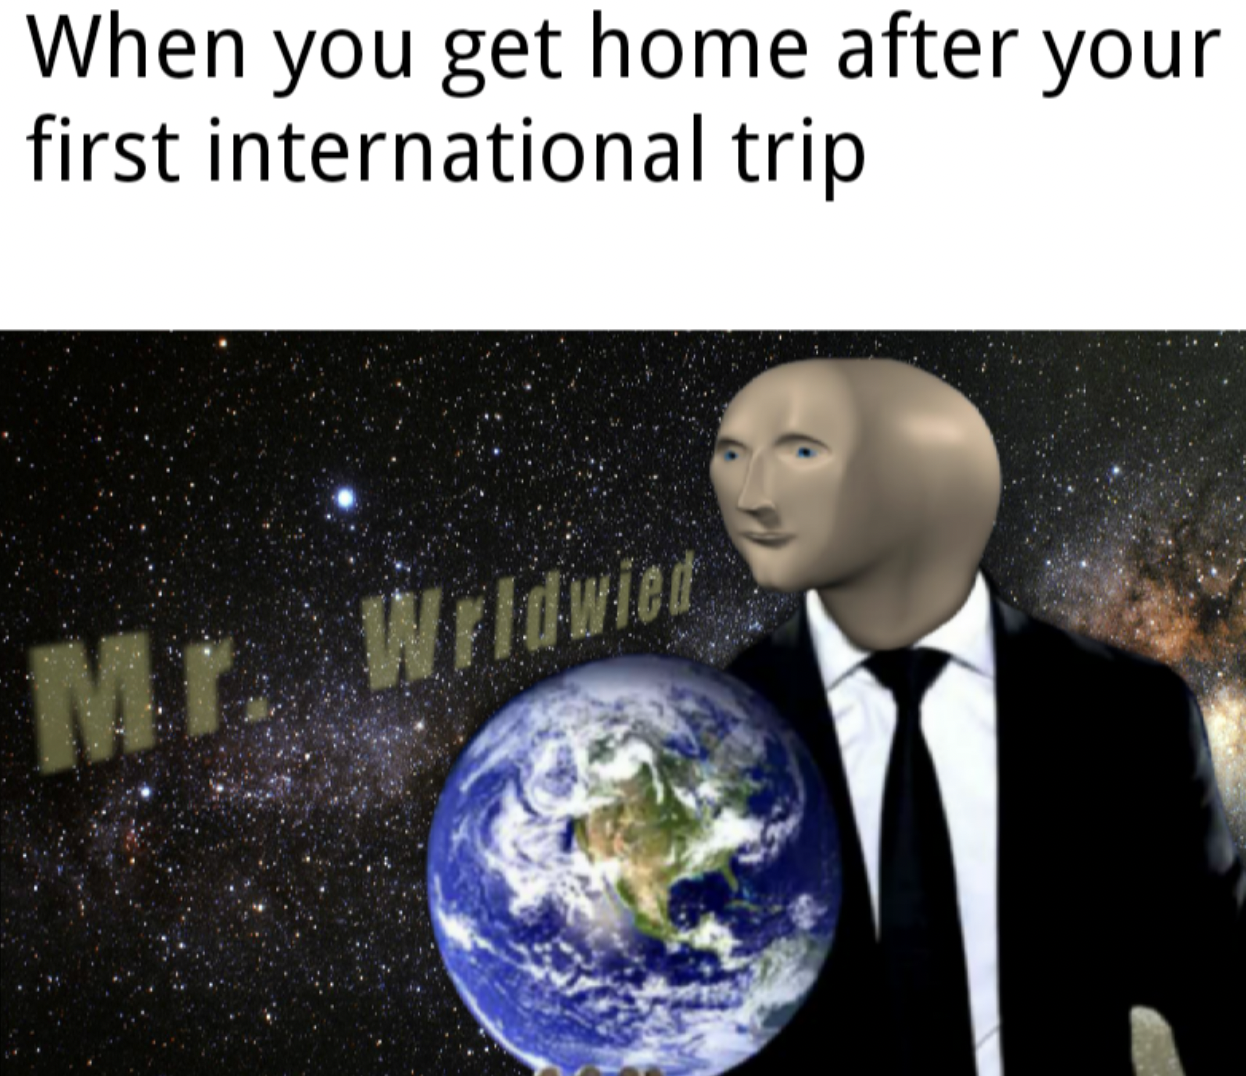 international traveler meme - When you get home after your first international trip Mr. Wrldwied 30